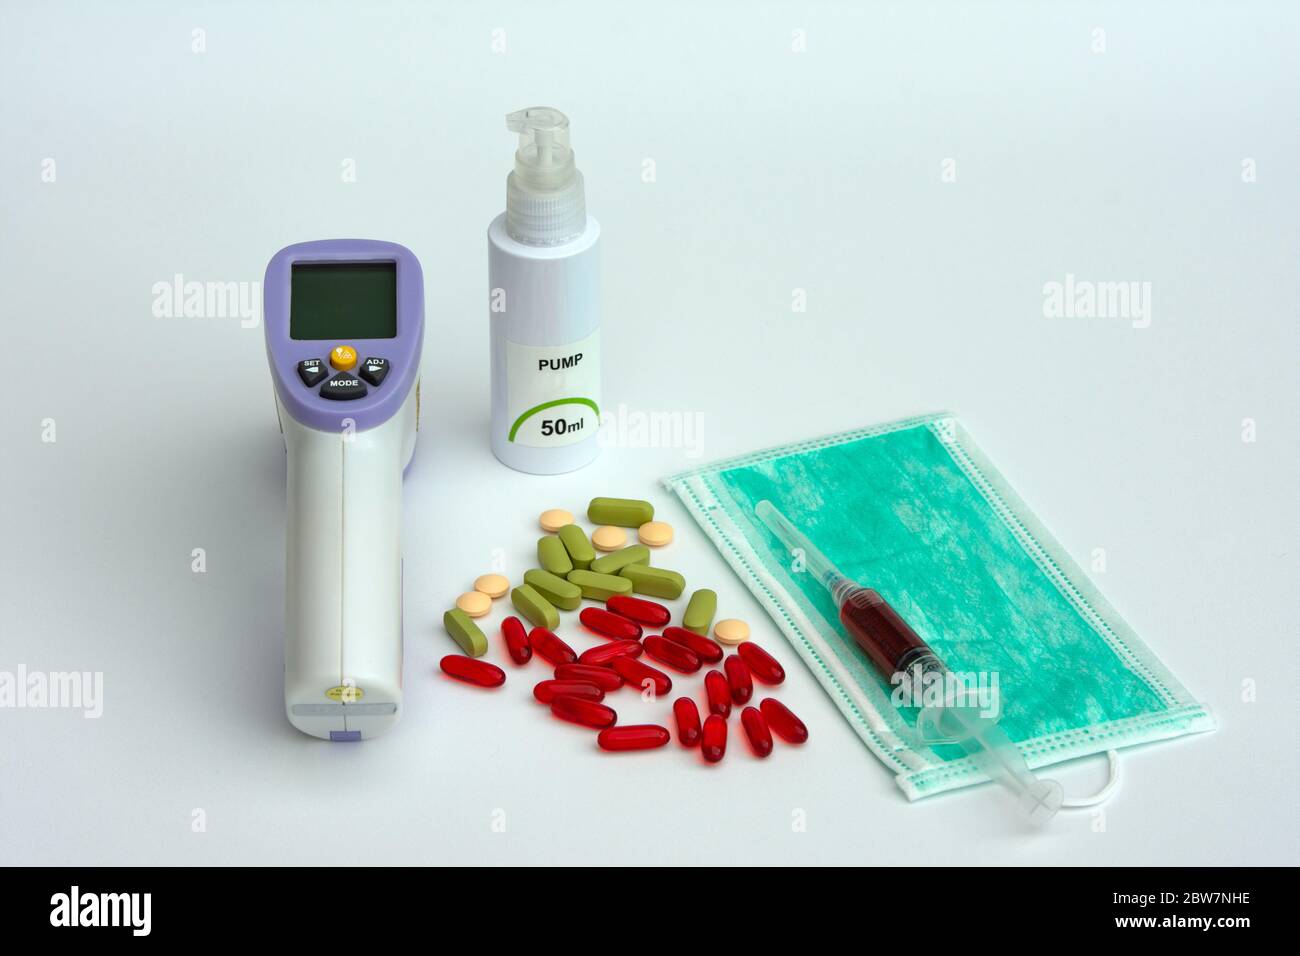 Concept de prévention et de traitement contre le coronavirus. Thermomètre numérique, divers comprimés, désinfectant pour les mains, masque chirurgical et échantillon de test sanguin Banque D'Images